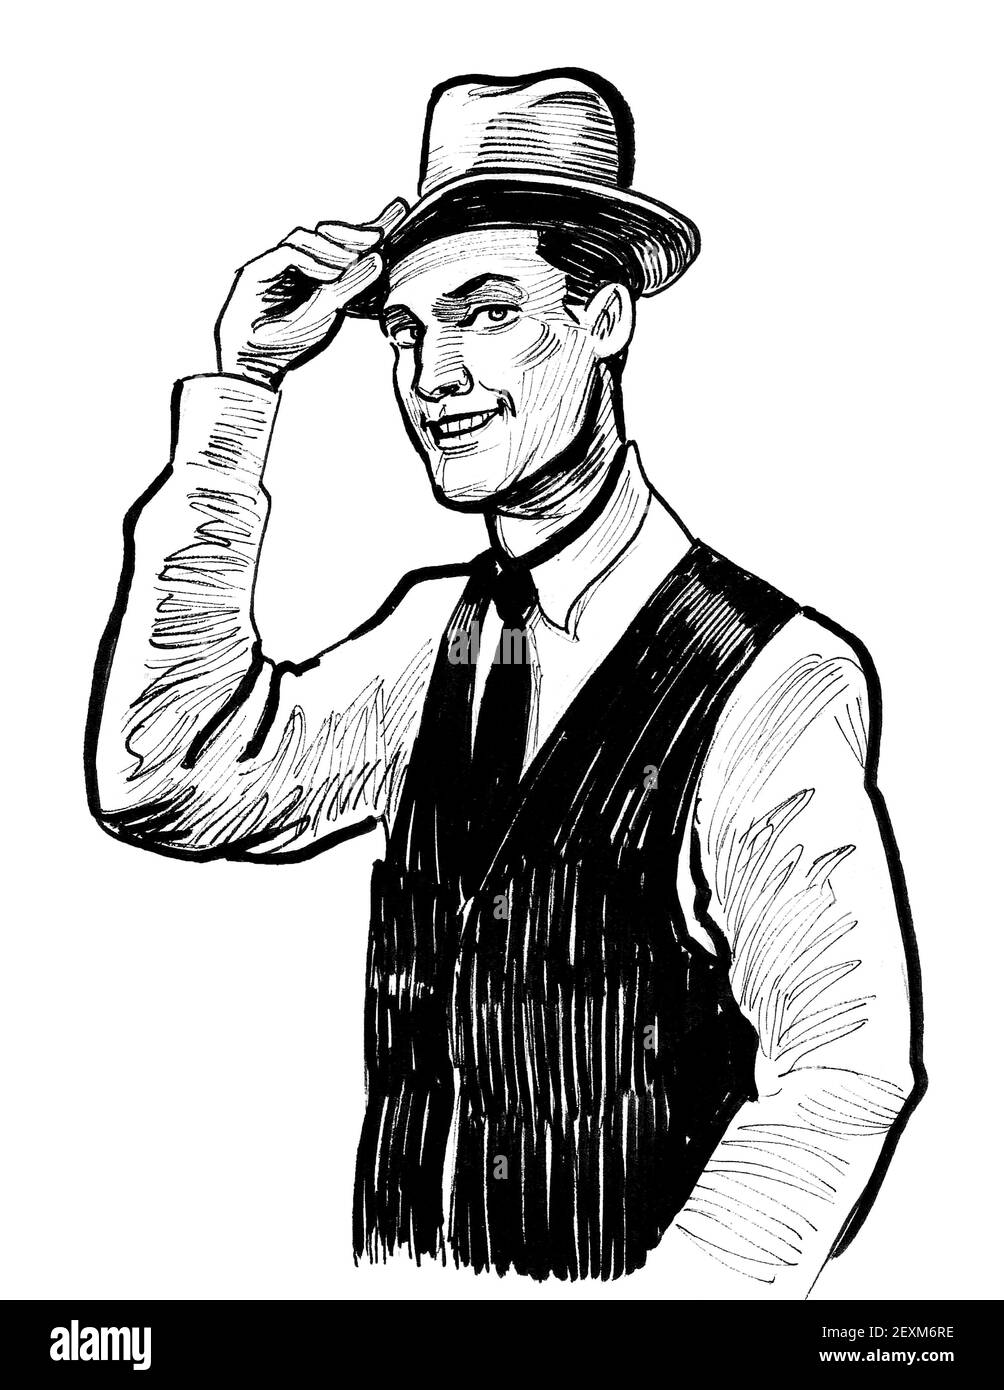 Beau homme en chapeau. Dessin noir et blanc Photo Stock - Alamy